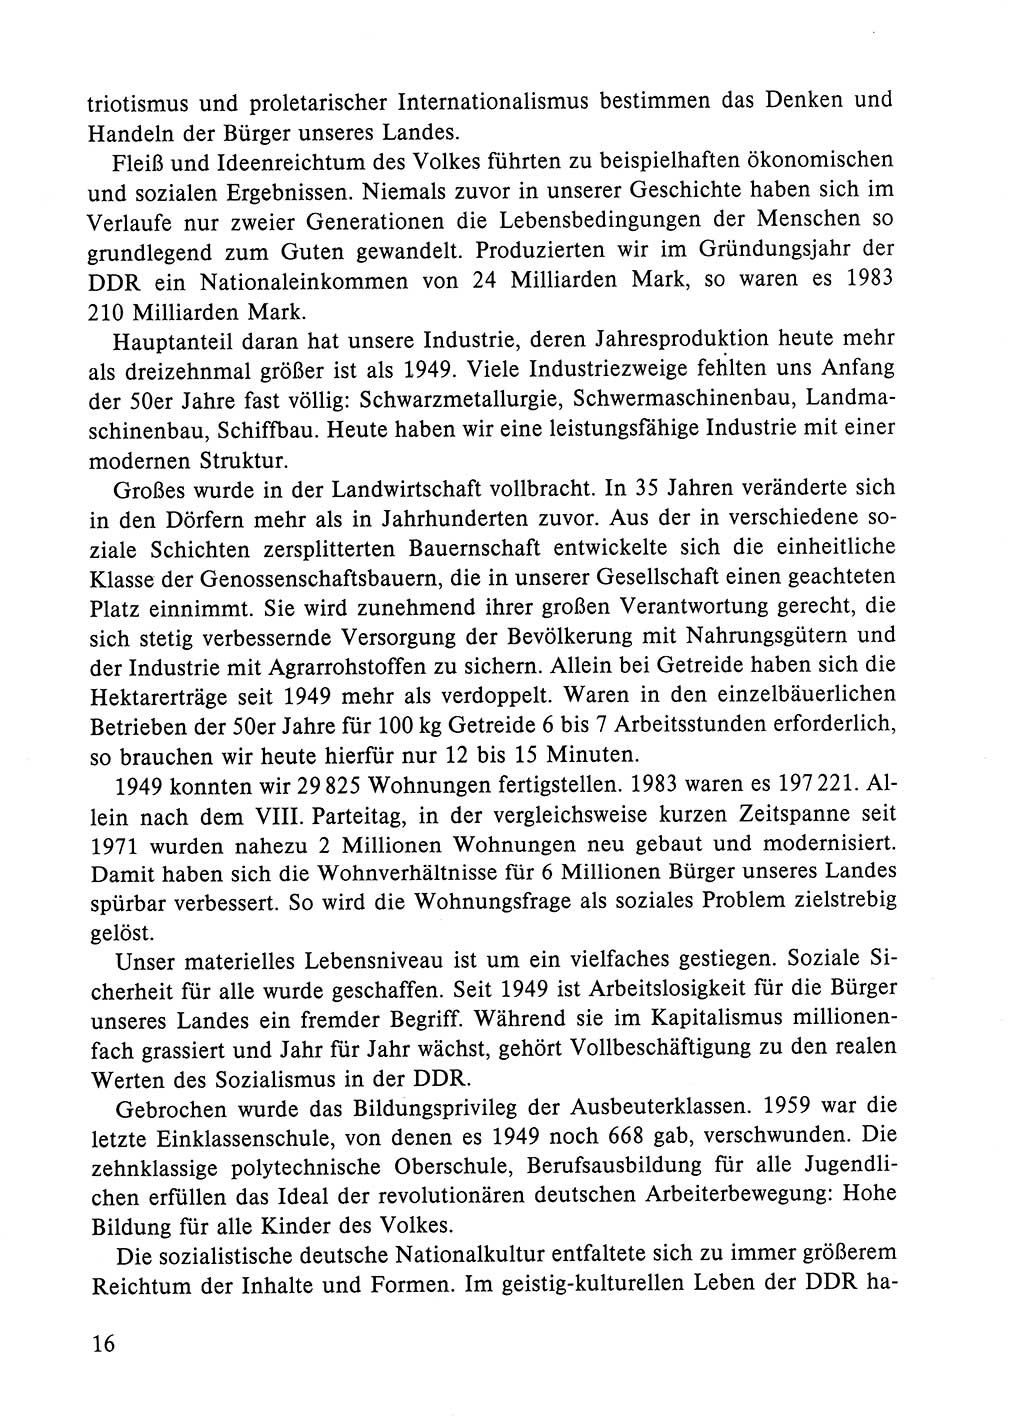 Dokumente der Sozialistischen Einheitspartei Deutschlands (SED) [Deutsche Demokratische Republik (DDR)] 1984-1985, Seite 16 (Dok. SED DDR 1984-1985, S. 16)